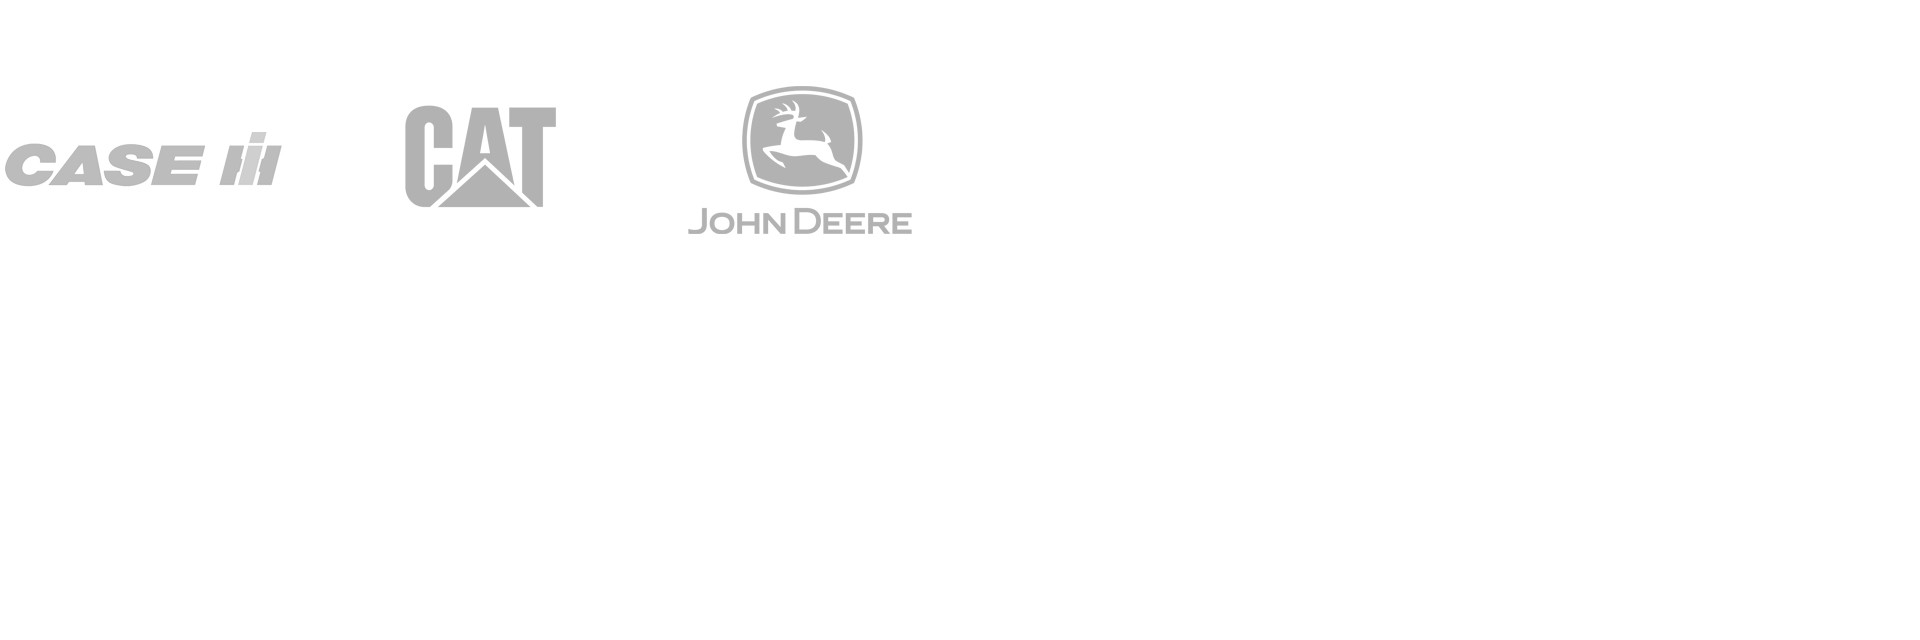 Logos of Case, CAT, and John Deere